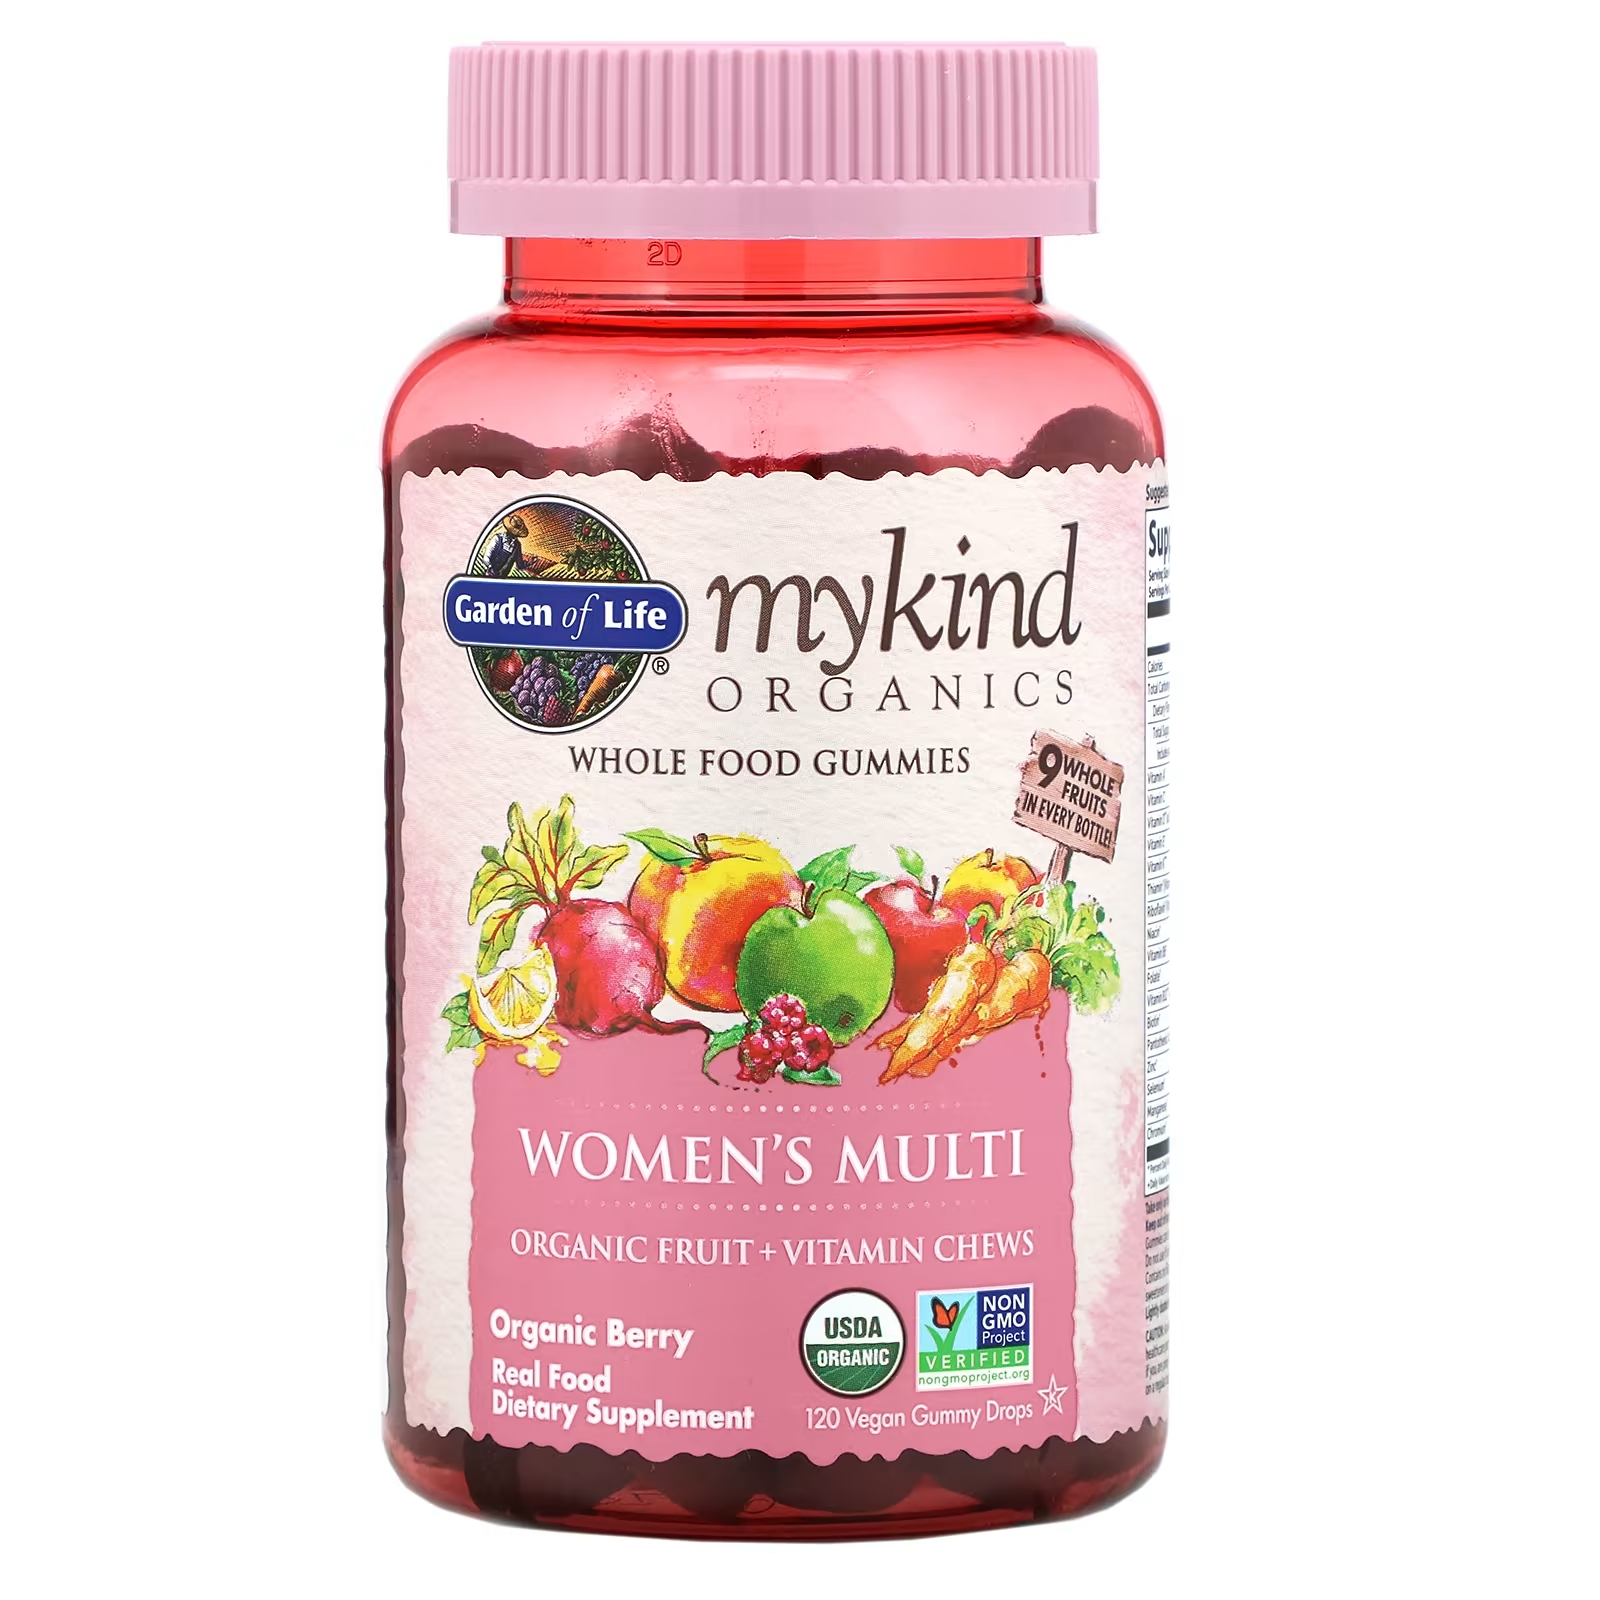 Мультивитамины для Женщин Garden of Life MyKind, ягоды, 120 жевательных таблеток garden of life mykind organics мультивитамины для женщин в возрасте от 40 лет органические ягоды 120 веганских жевательных конфет